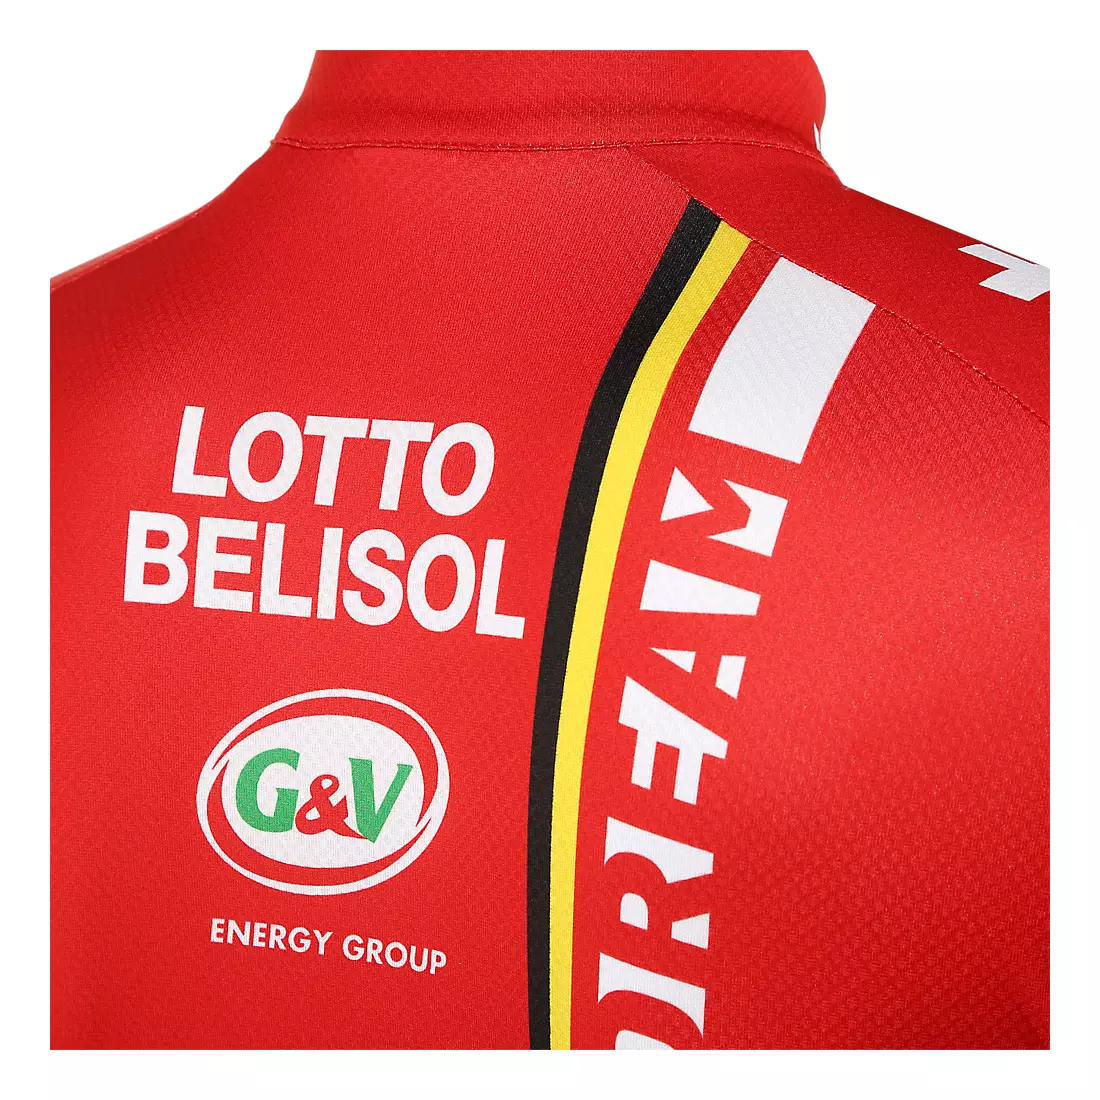 VERMARC - LOTTO BELISOL 2014 cyklistický dres, celopropínací